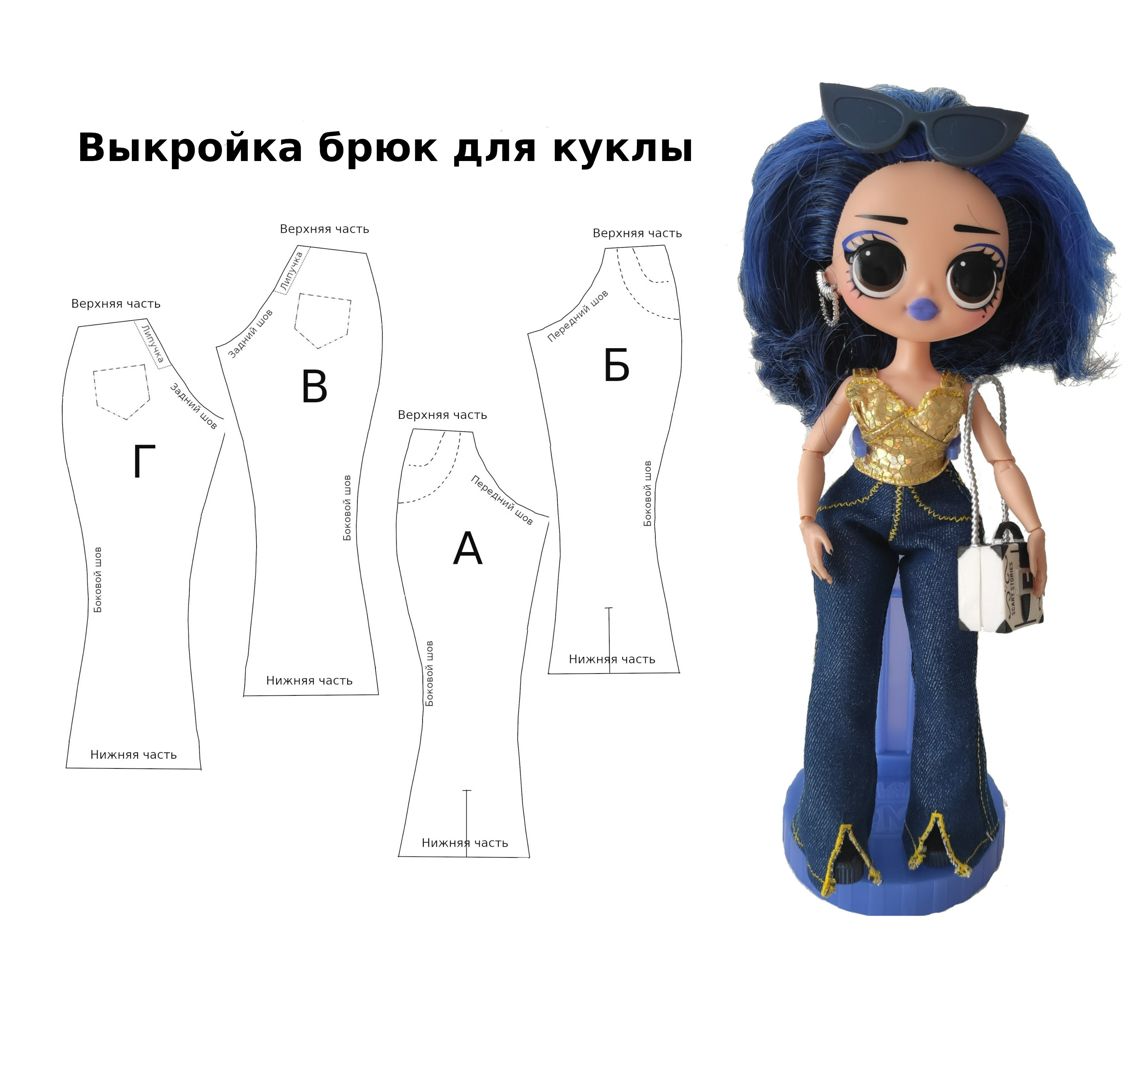 Выкройка текстильной куклы 27 см с выкройками одежды и мишки (Елена Соколкова)